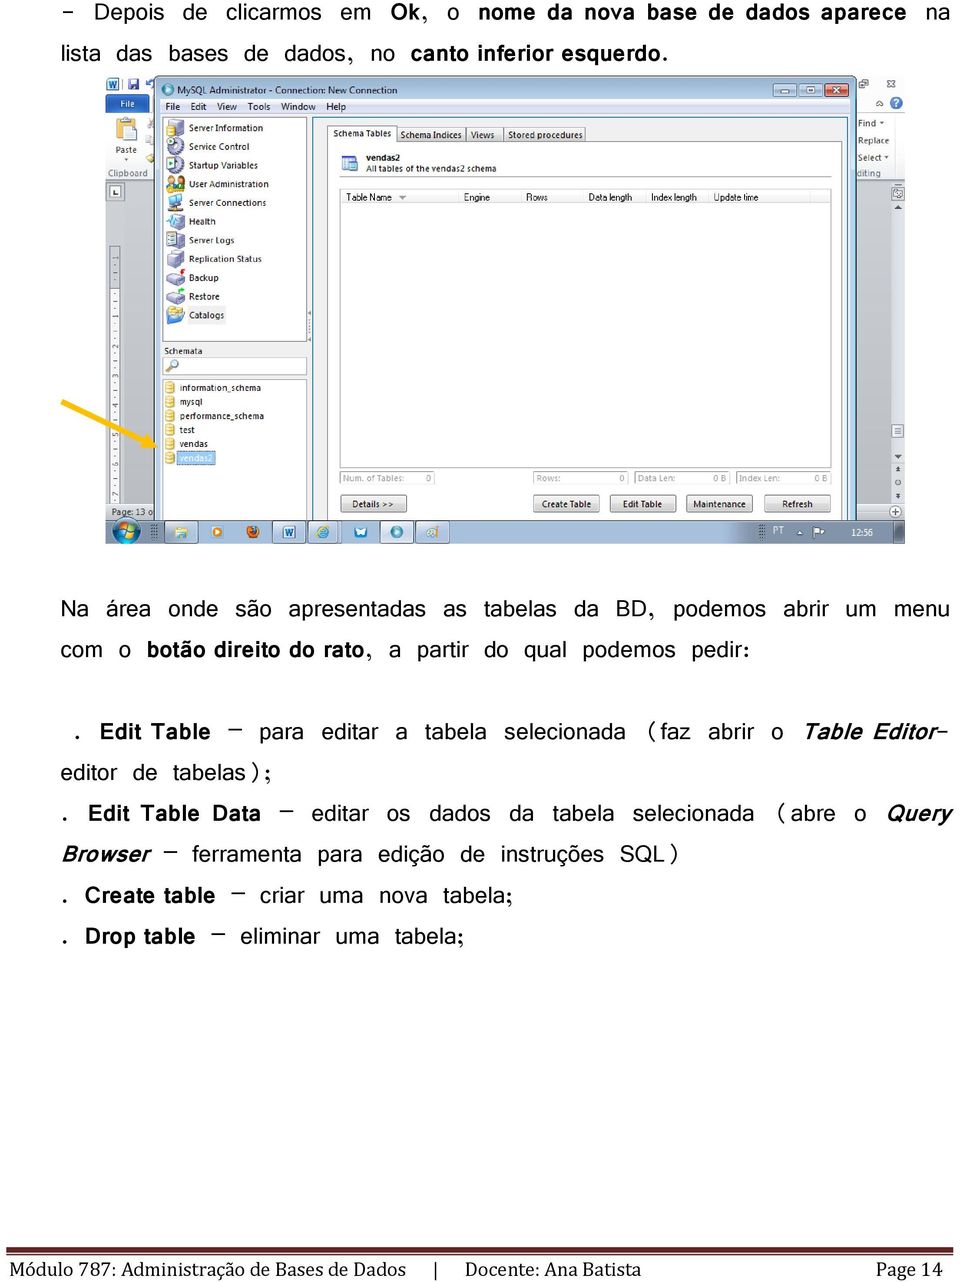 Edit Table para editar a tabela selecionada (faz abrir o Table Editoreditor de tabelas);.